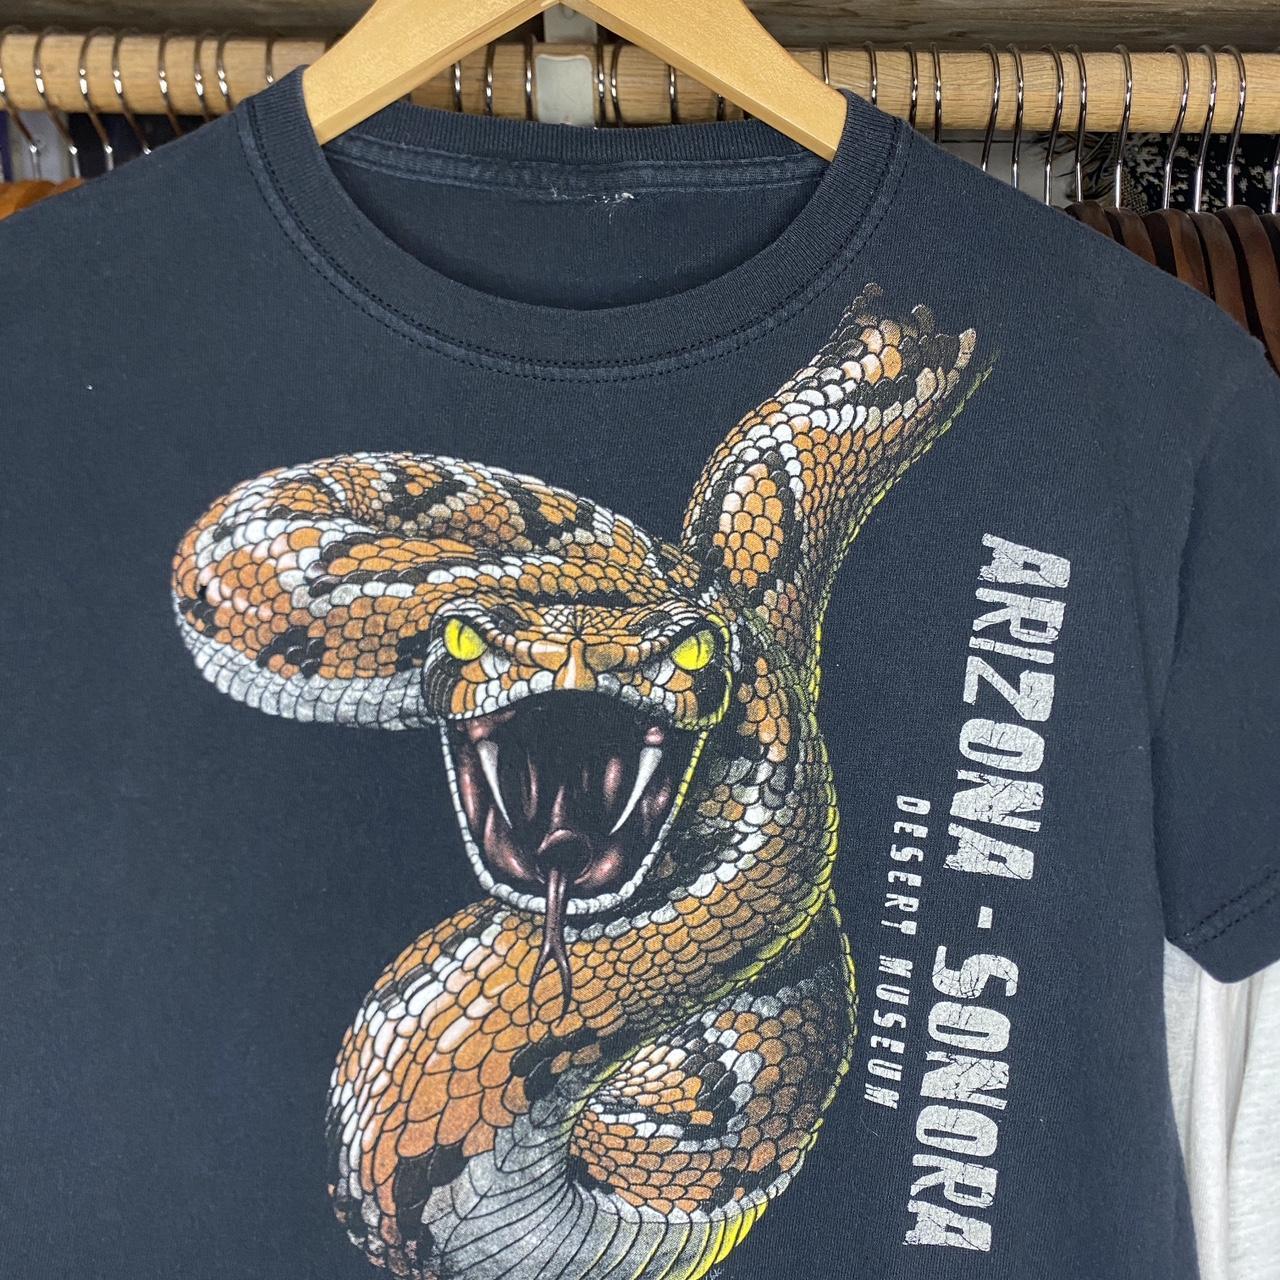 Vintage Y2K Rattlesnake T-shirt 2000s / Fits like a... - Depop